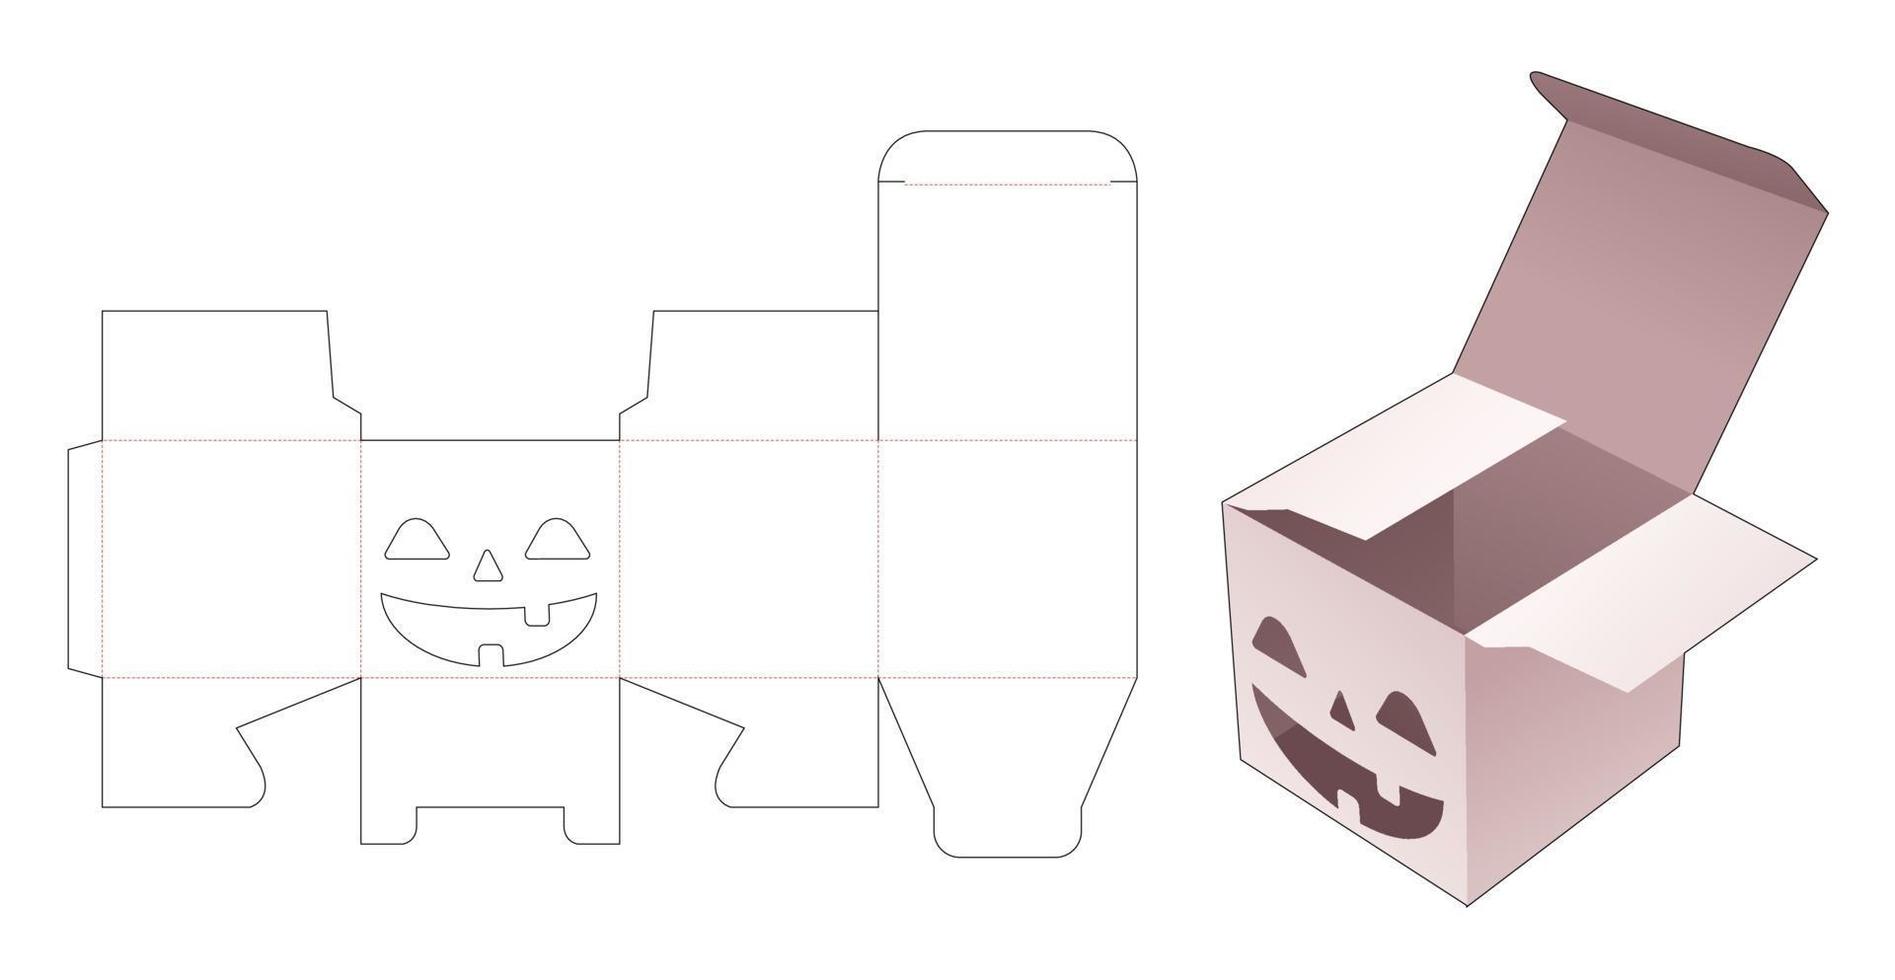 modelo de corte de molde para caixa de embalagem vetor